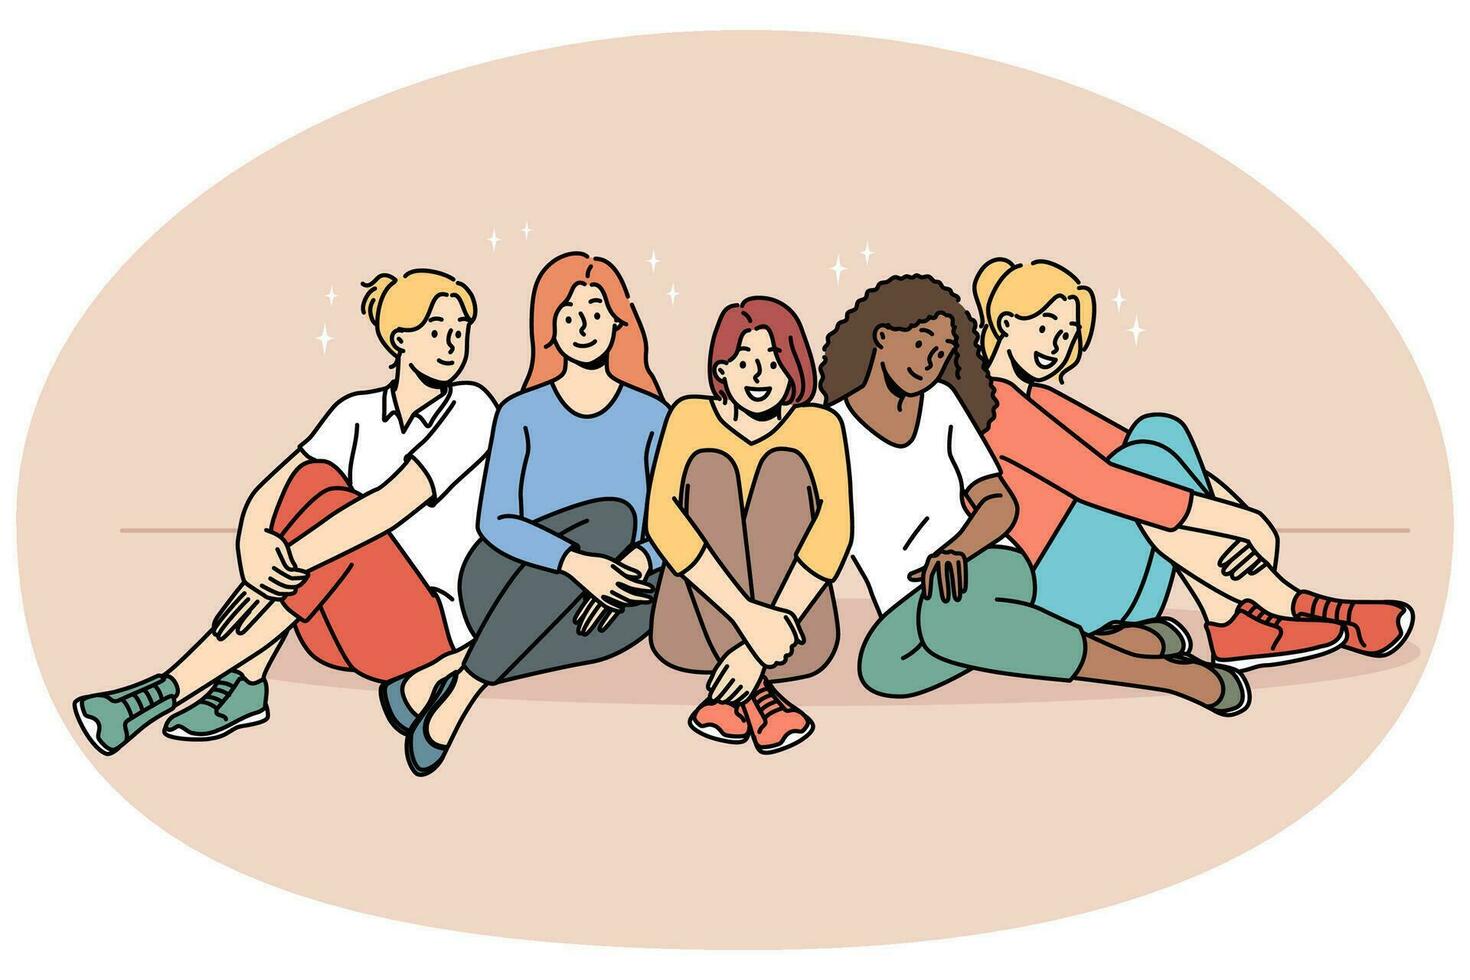 leende raser olika kvinnor sitta tillsammans visa enhet och Stöd. Lycklig multietnisk interracial flickor ha roligt koppla av. samhörighet och vänskap. vektor illustration.